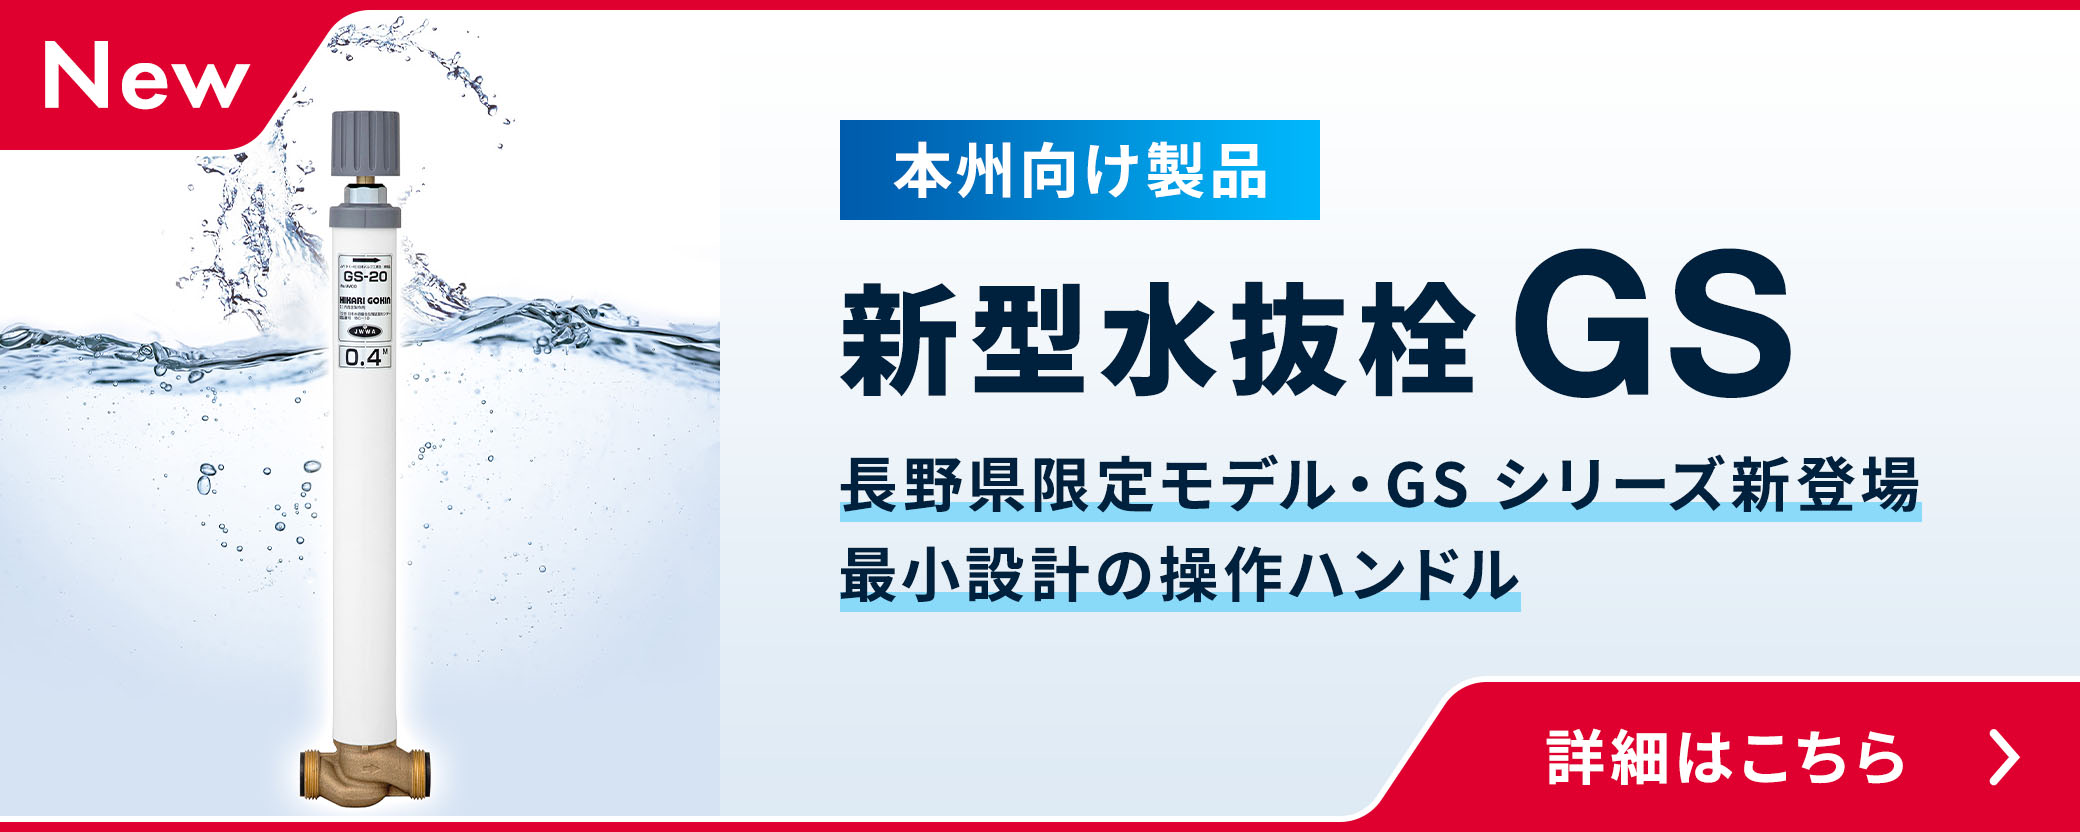 NEW 本州向け製品 新型水抜栓 GS。長野県限定モデル・GSシリーズ新登場、最小設計の操作ハンドルです。